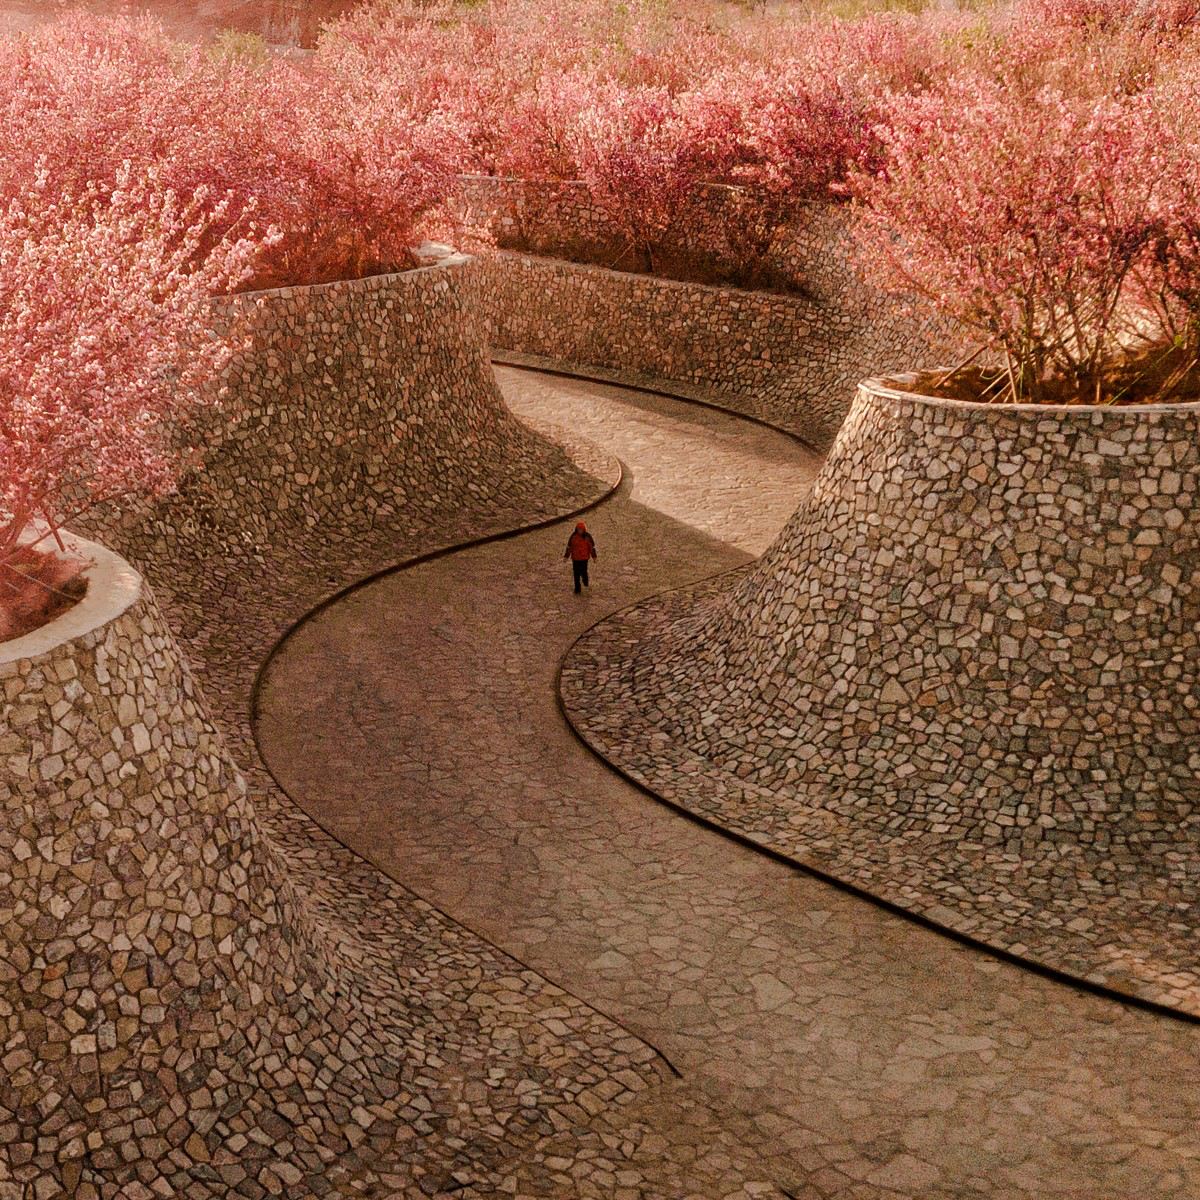 Rizhao Bailuwan Cherry Blossom Town: Eine natürliche Oase der Kunst und Kultur